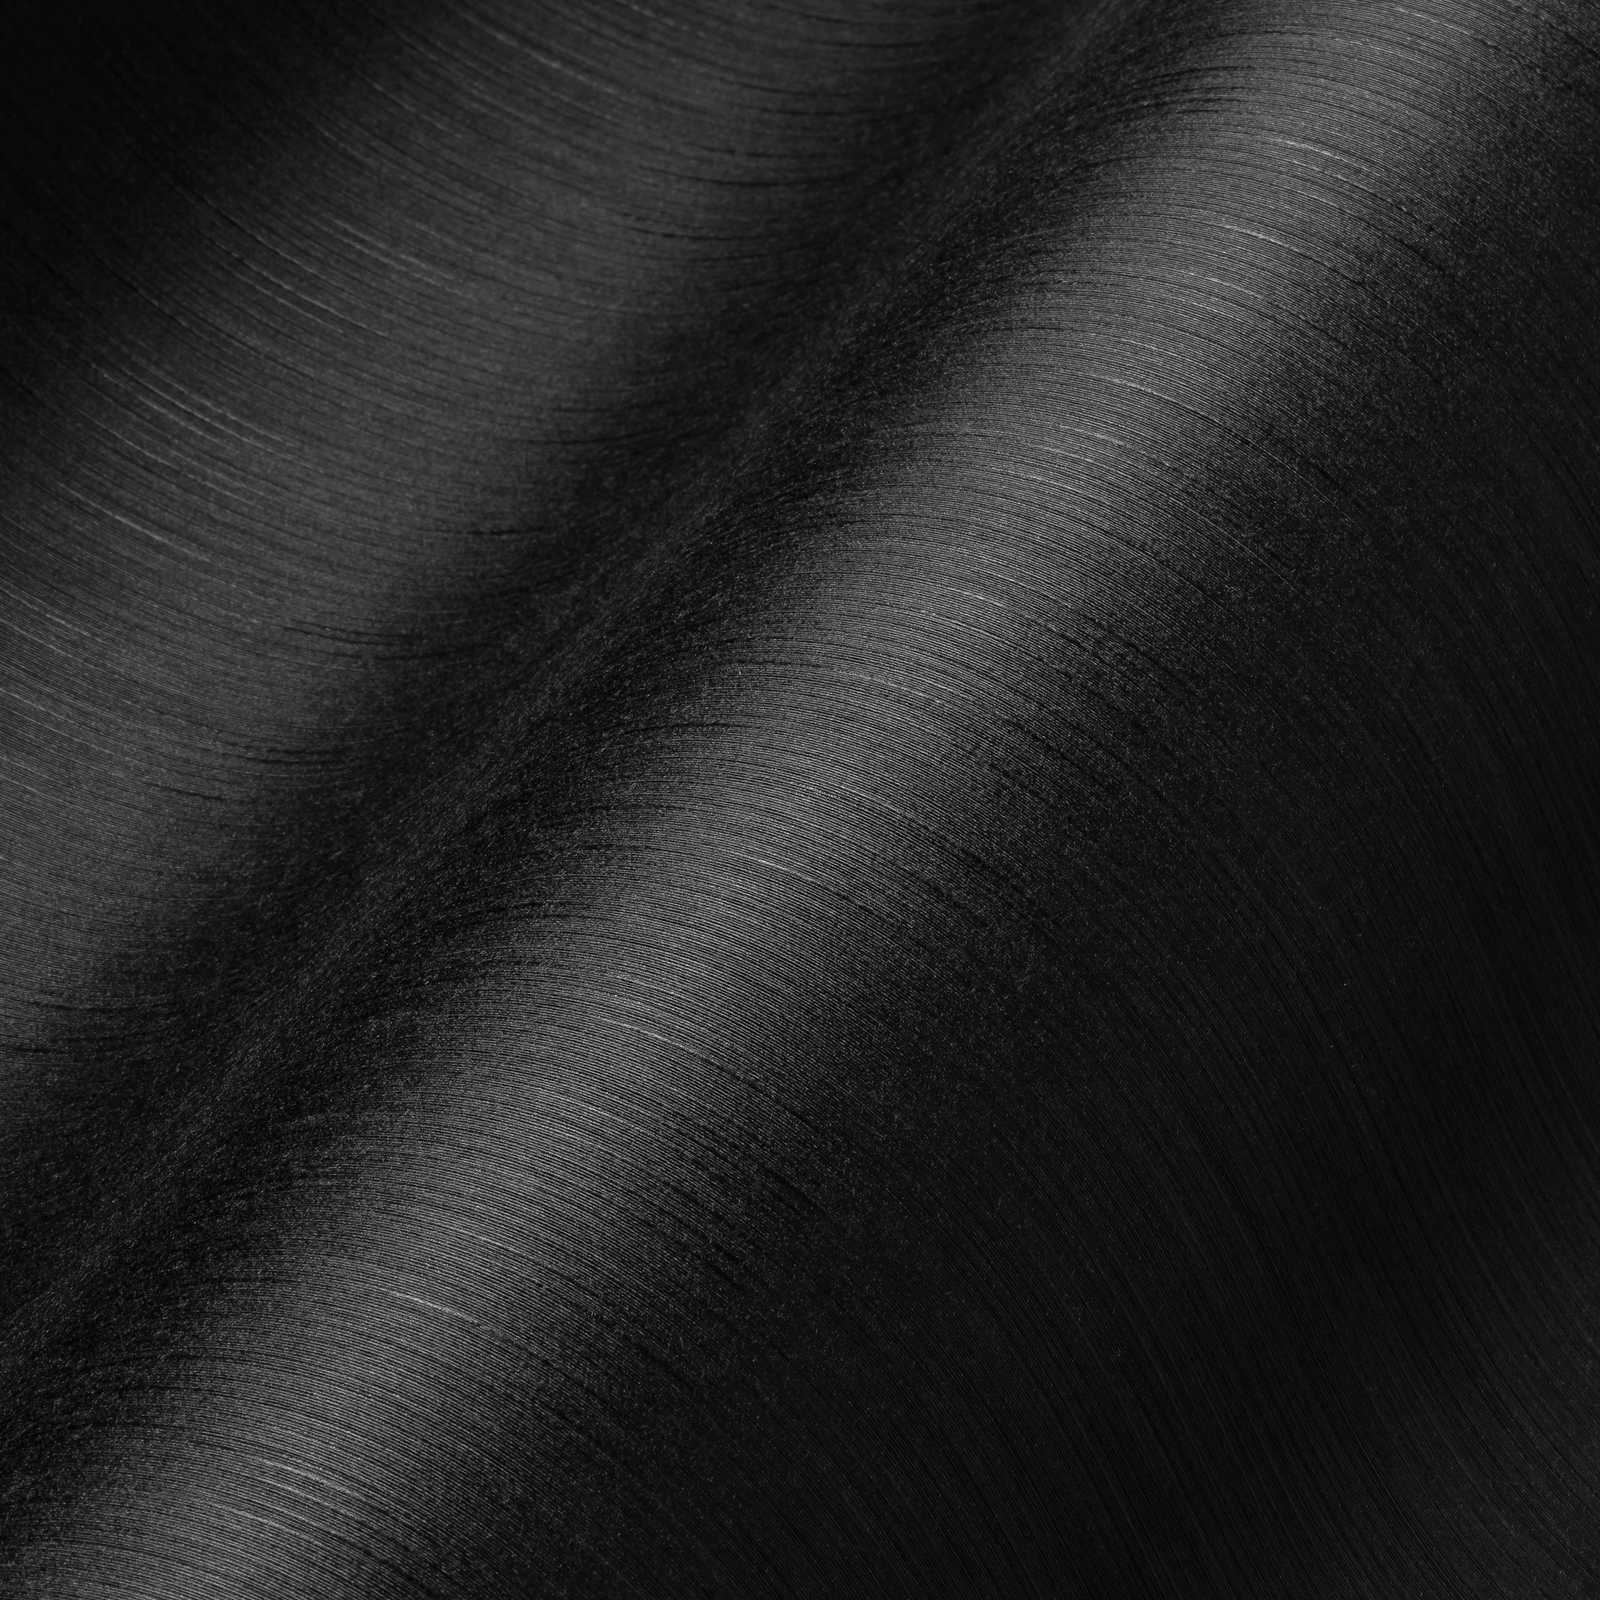             Papel pintado negro no tejido con efecto de textura moteada
        